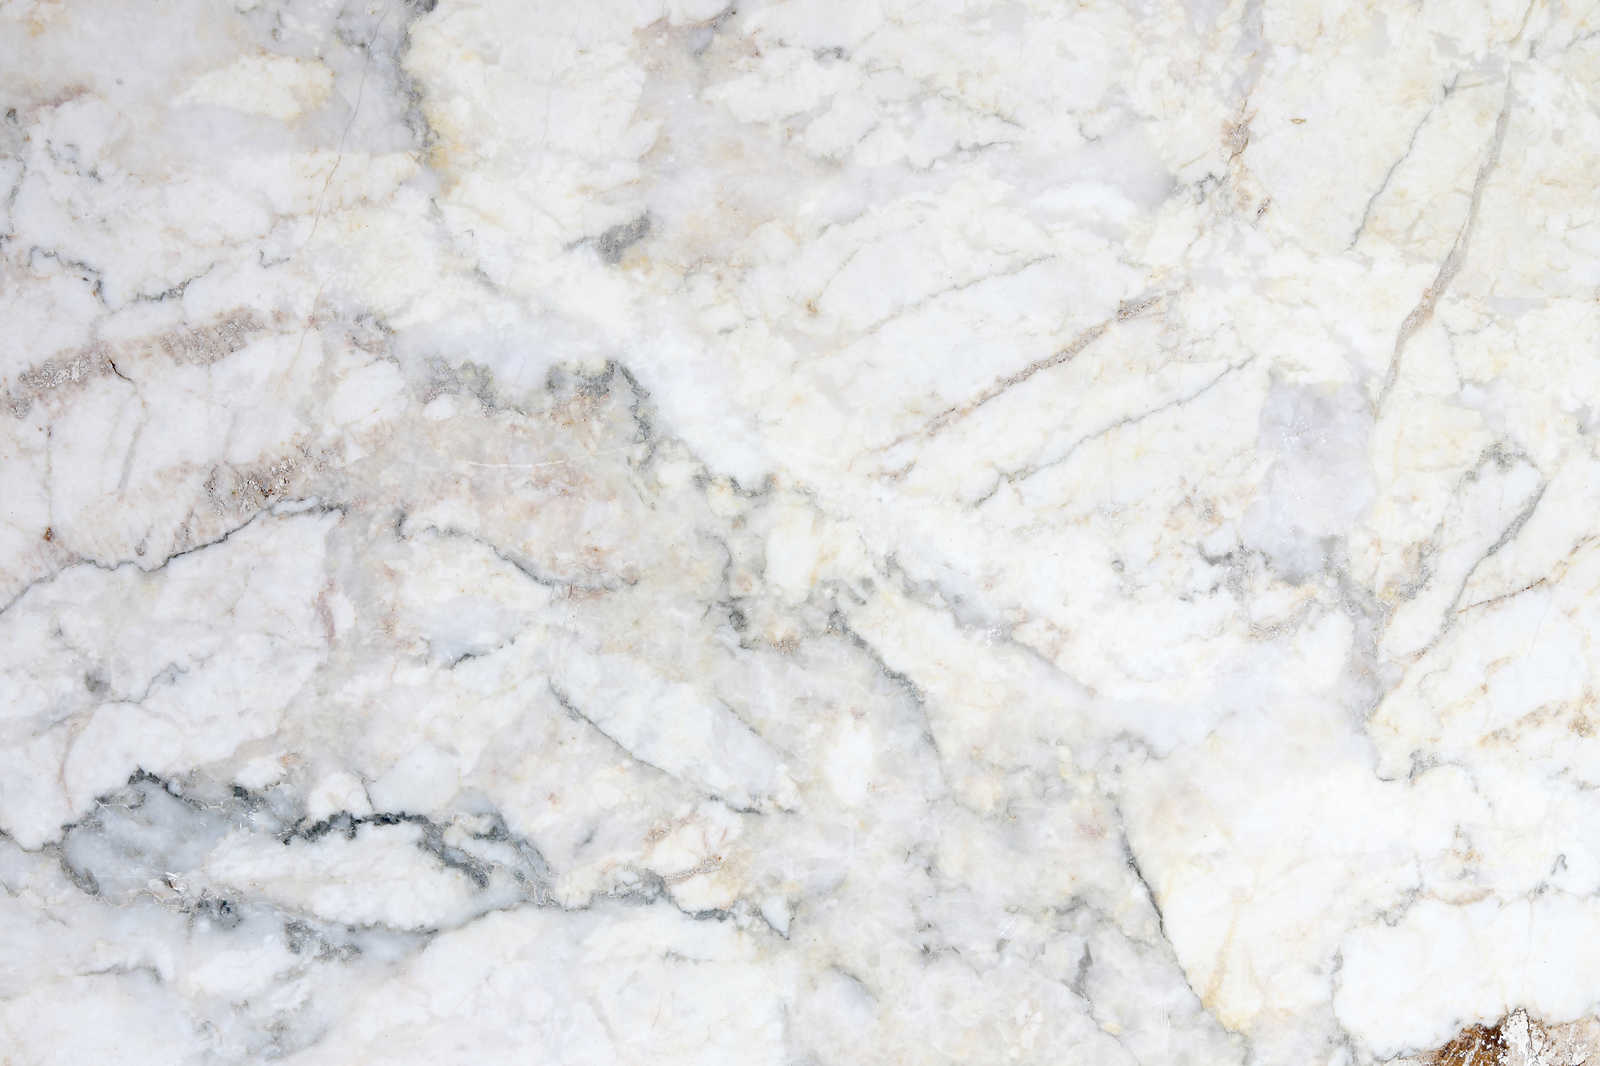             Tableau toile marbre réaliste & grand format - 0,90 m x 0,60 m
        